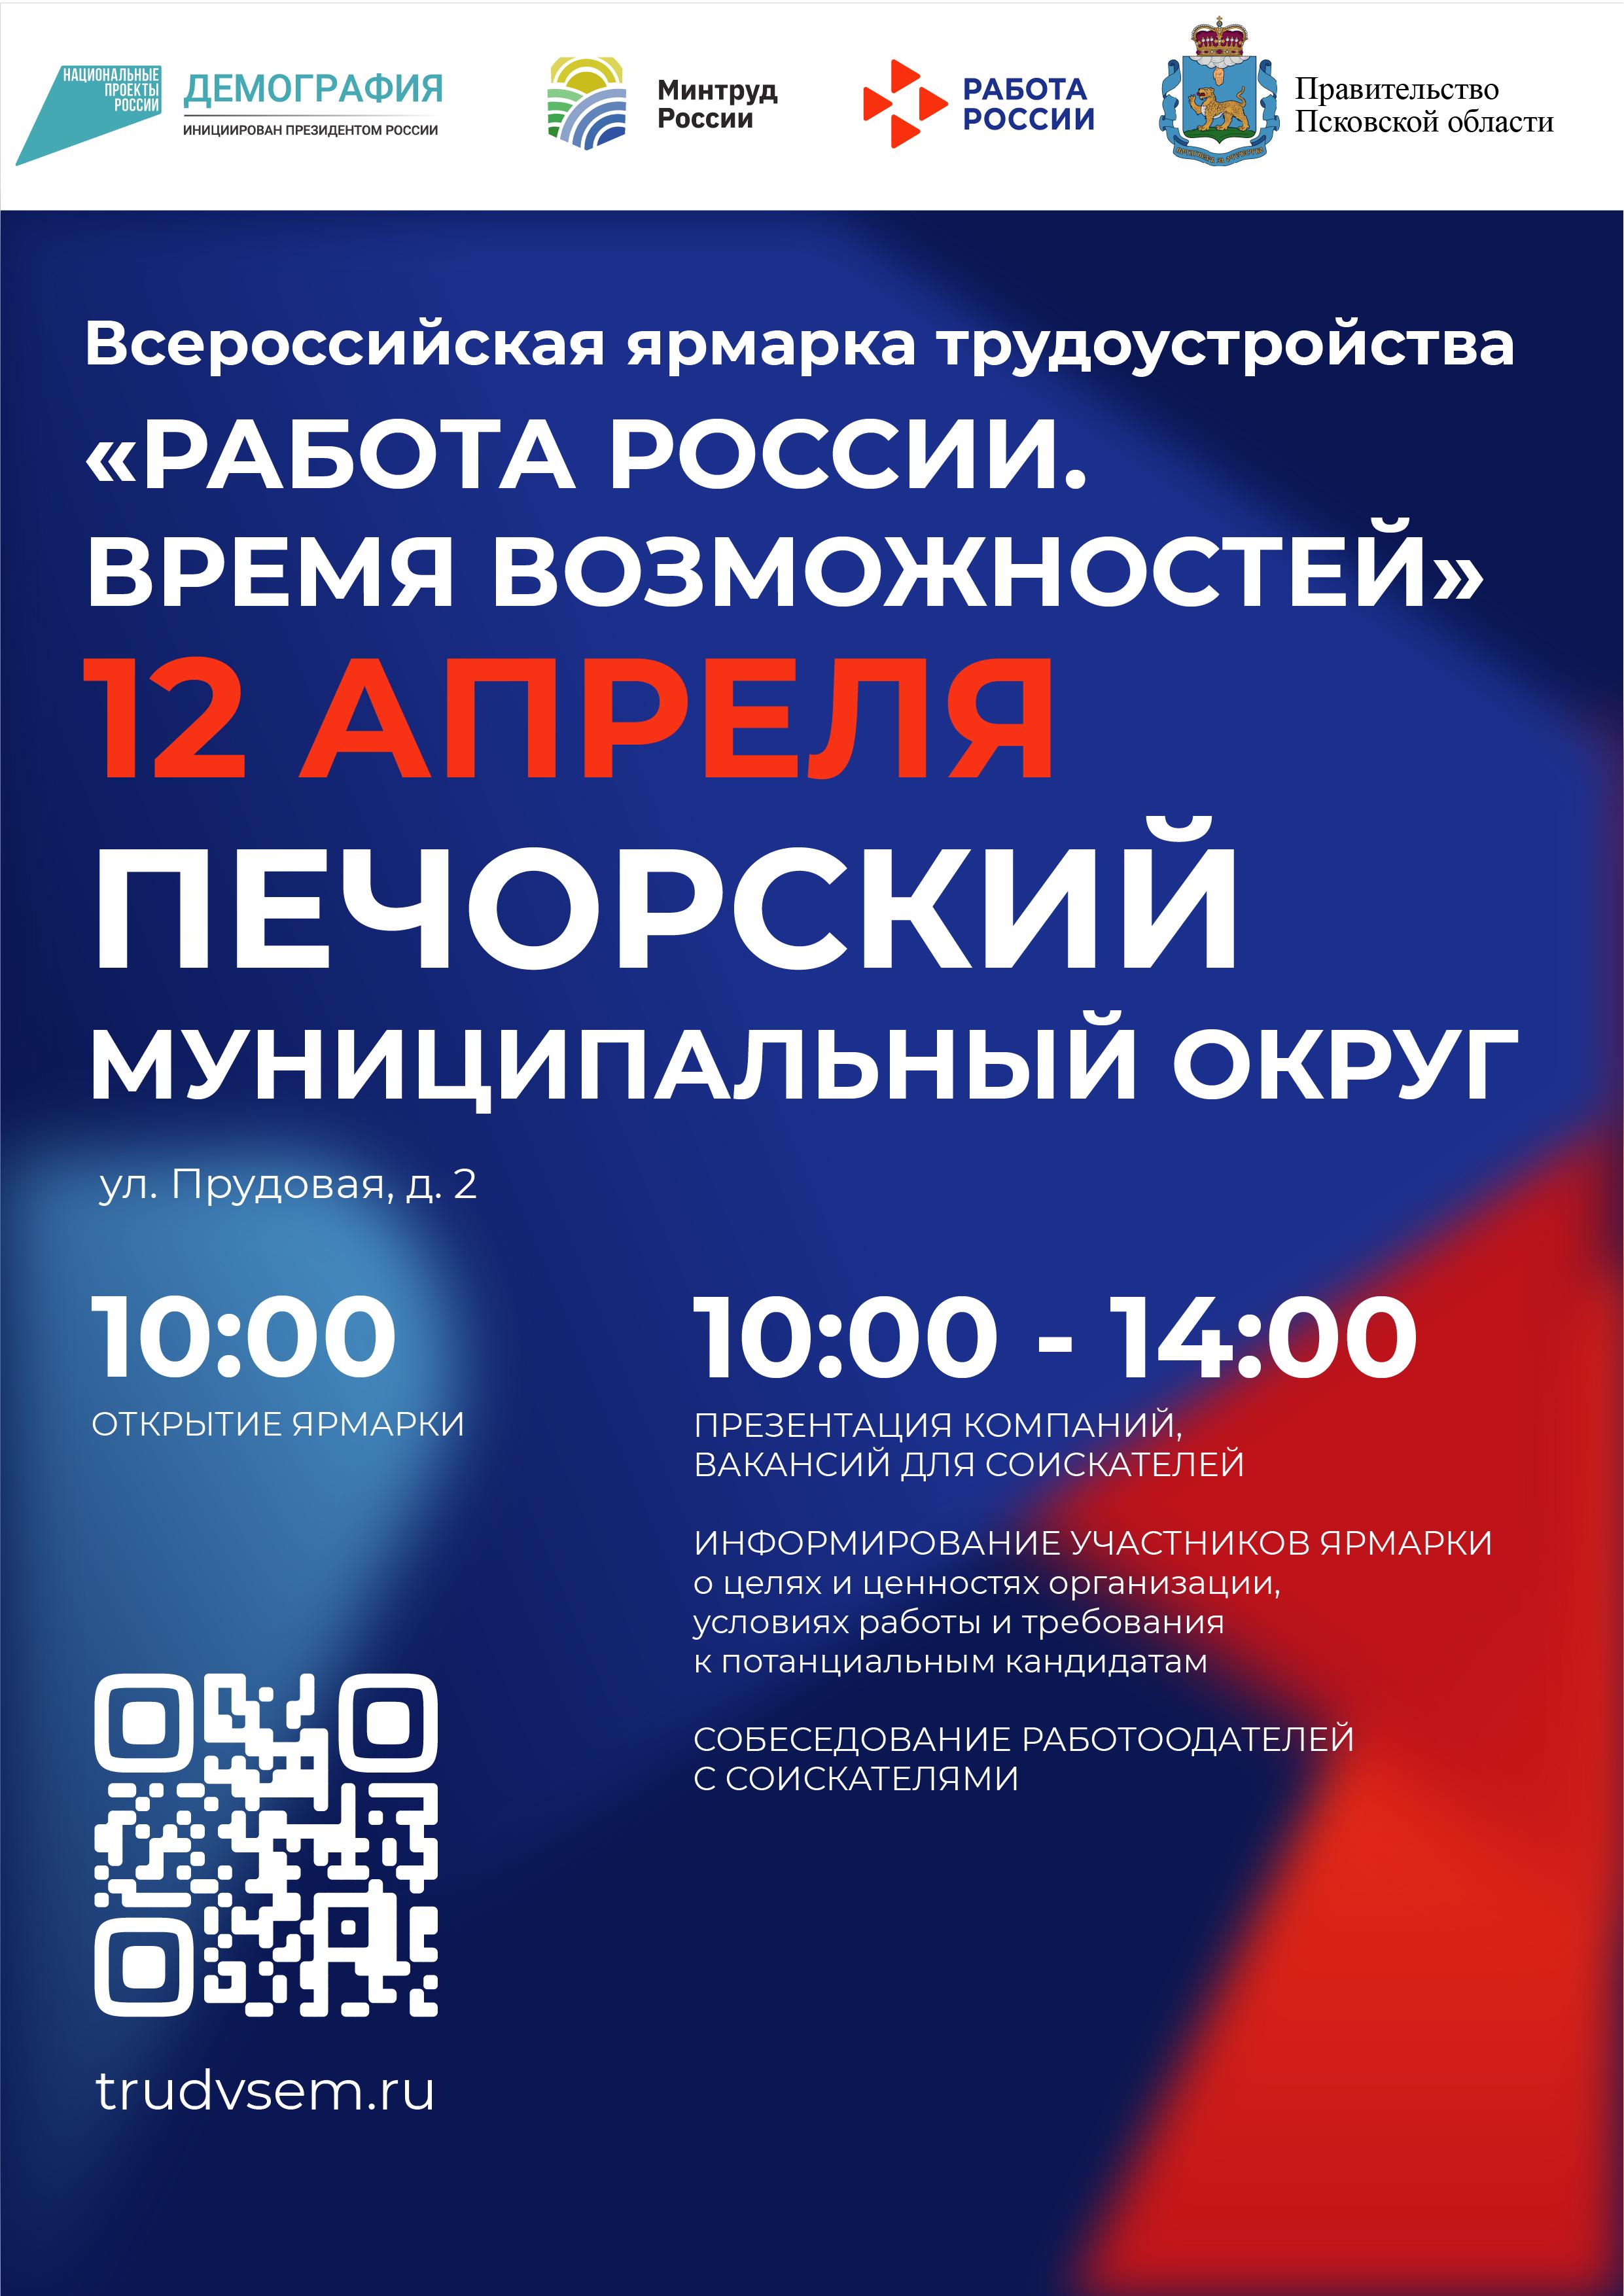 Ярмарка вакансий пройдёт в Псковской области_Печоры.